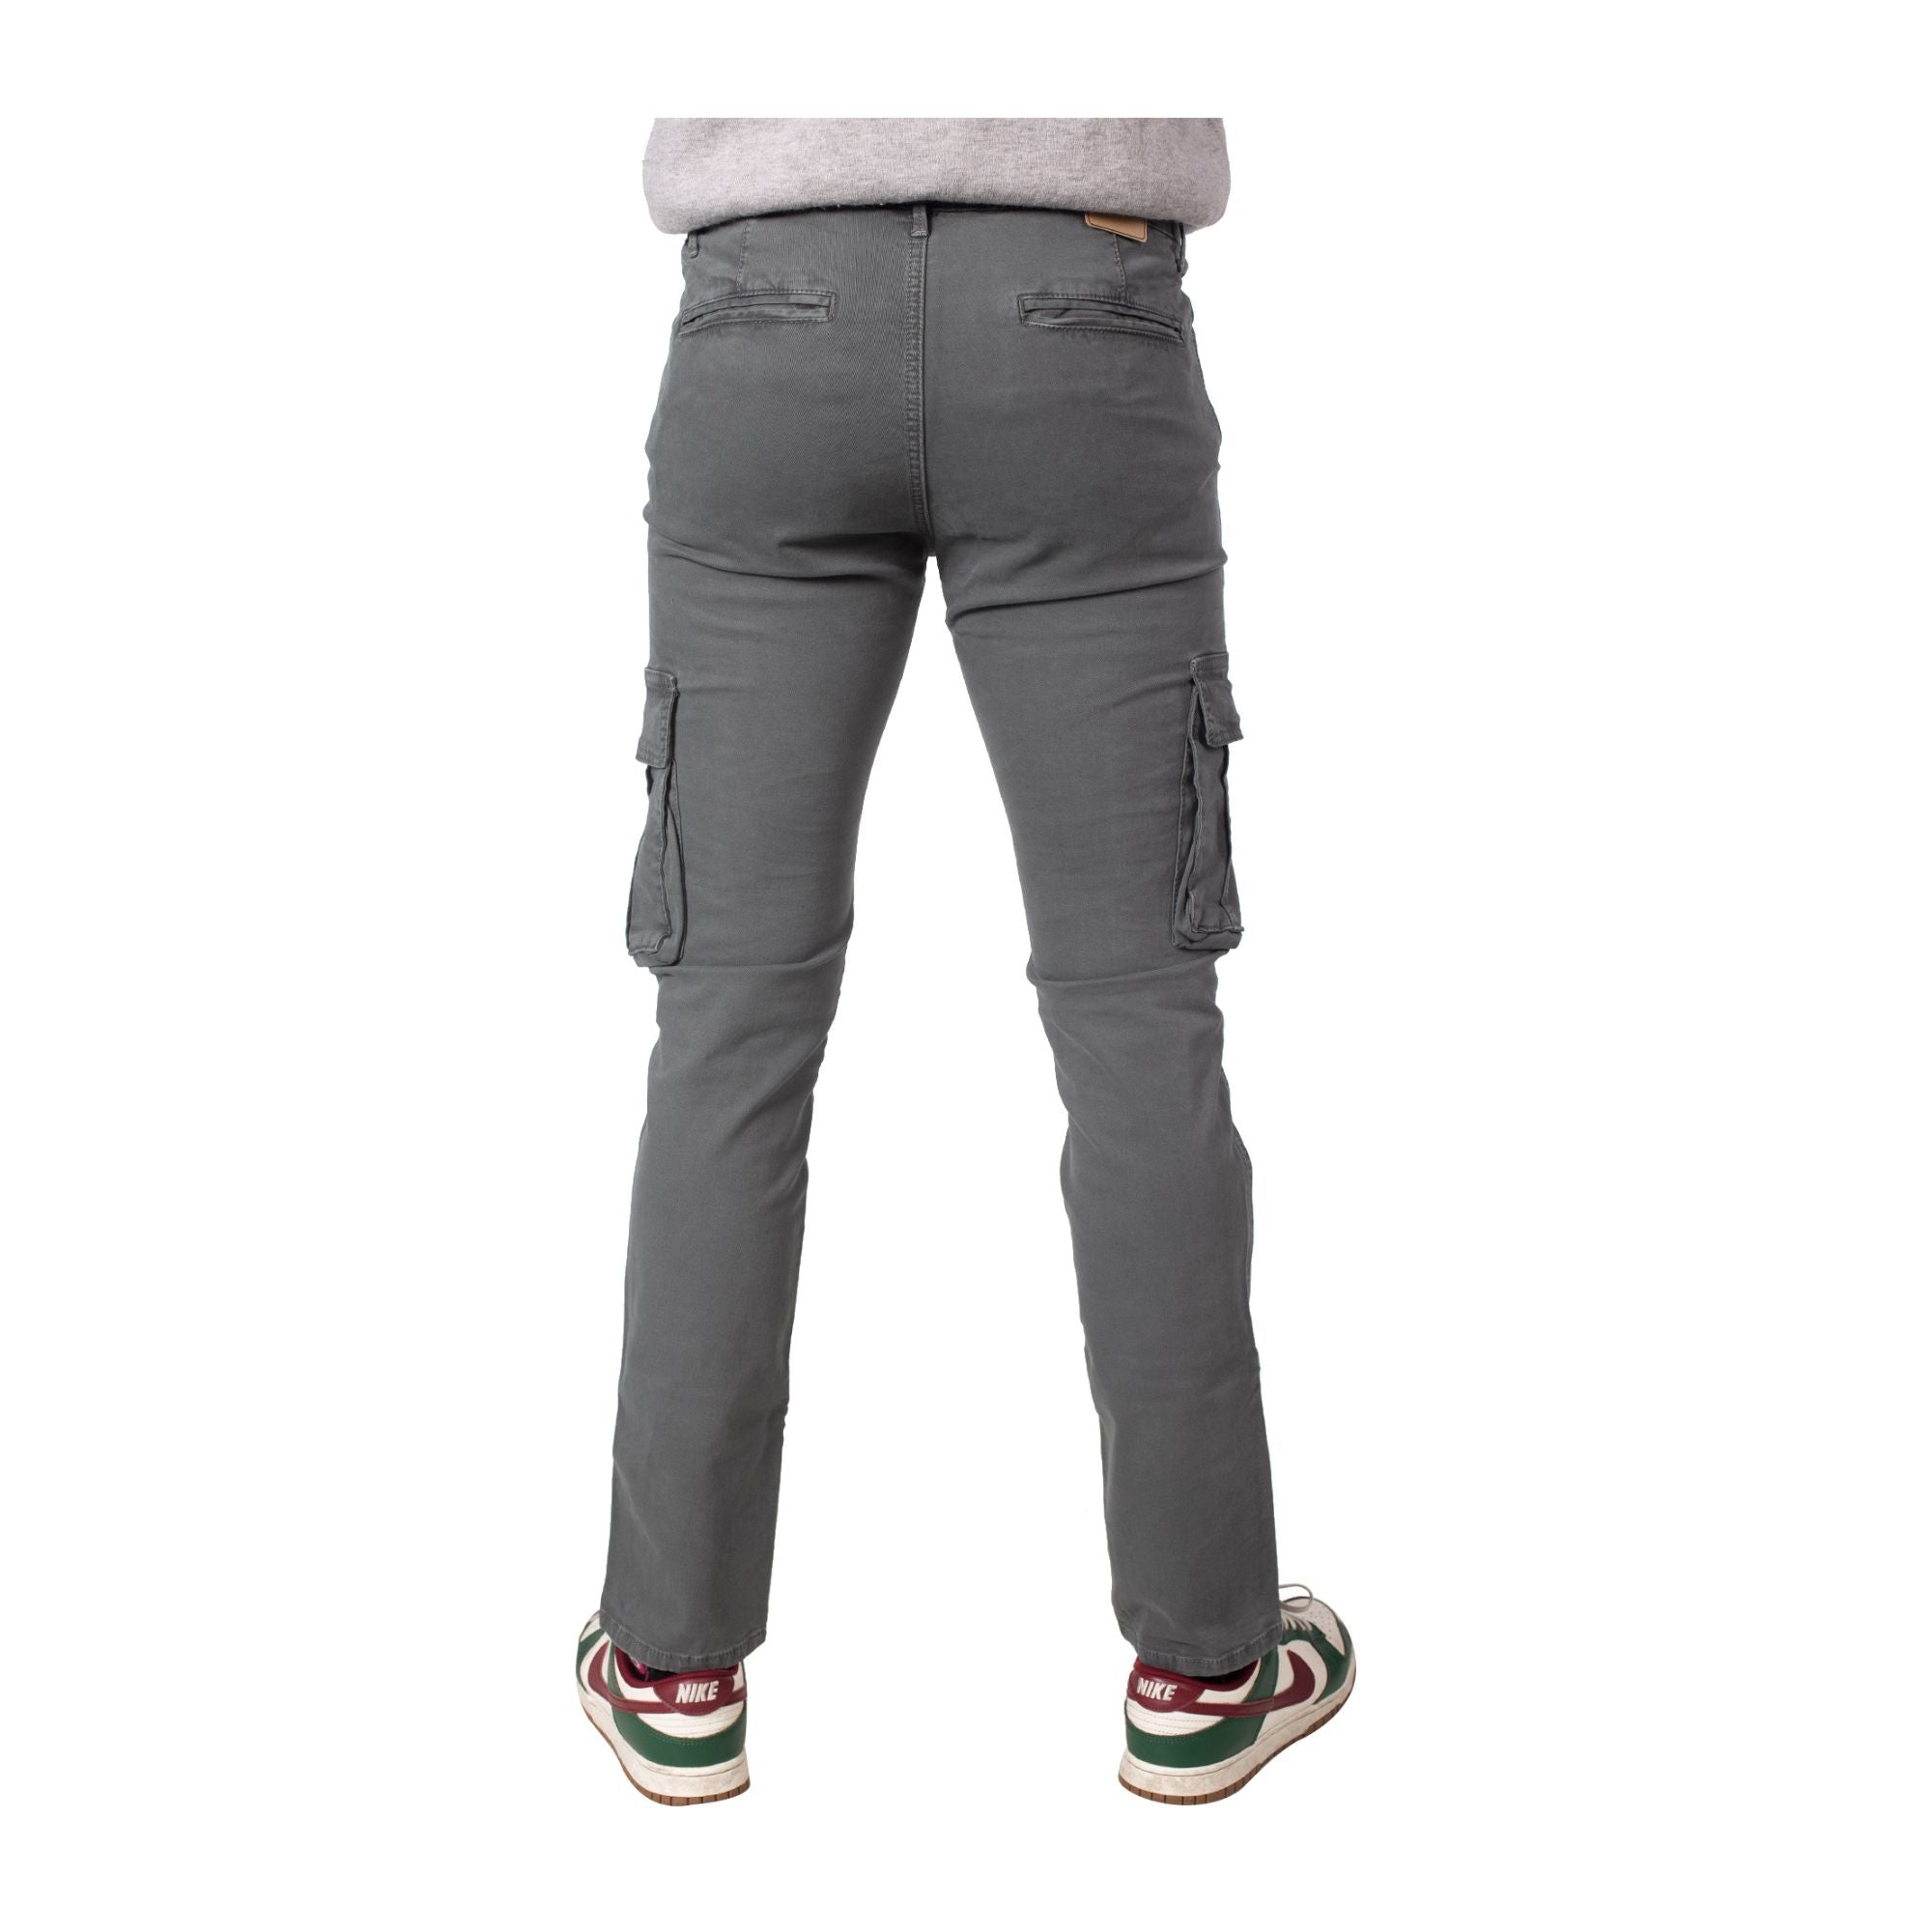 Pantalone Uomo dotato di due tasche con patta e chiusura con zip e bottone